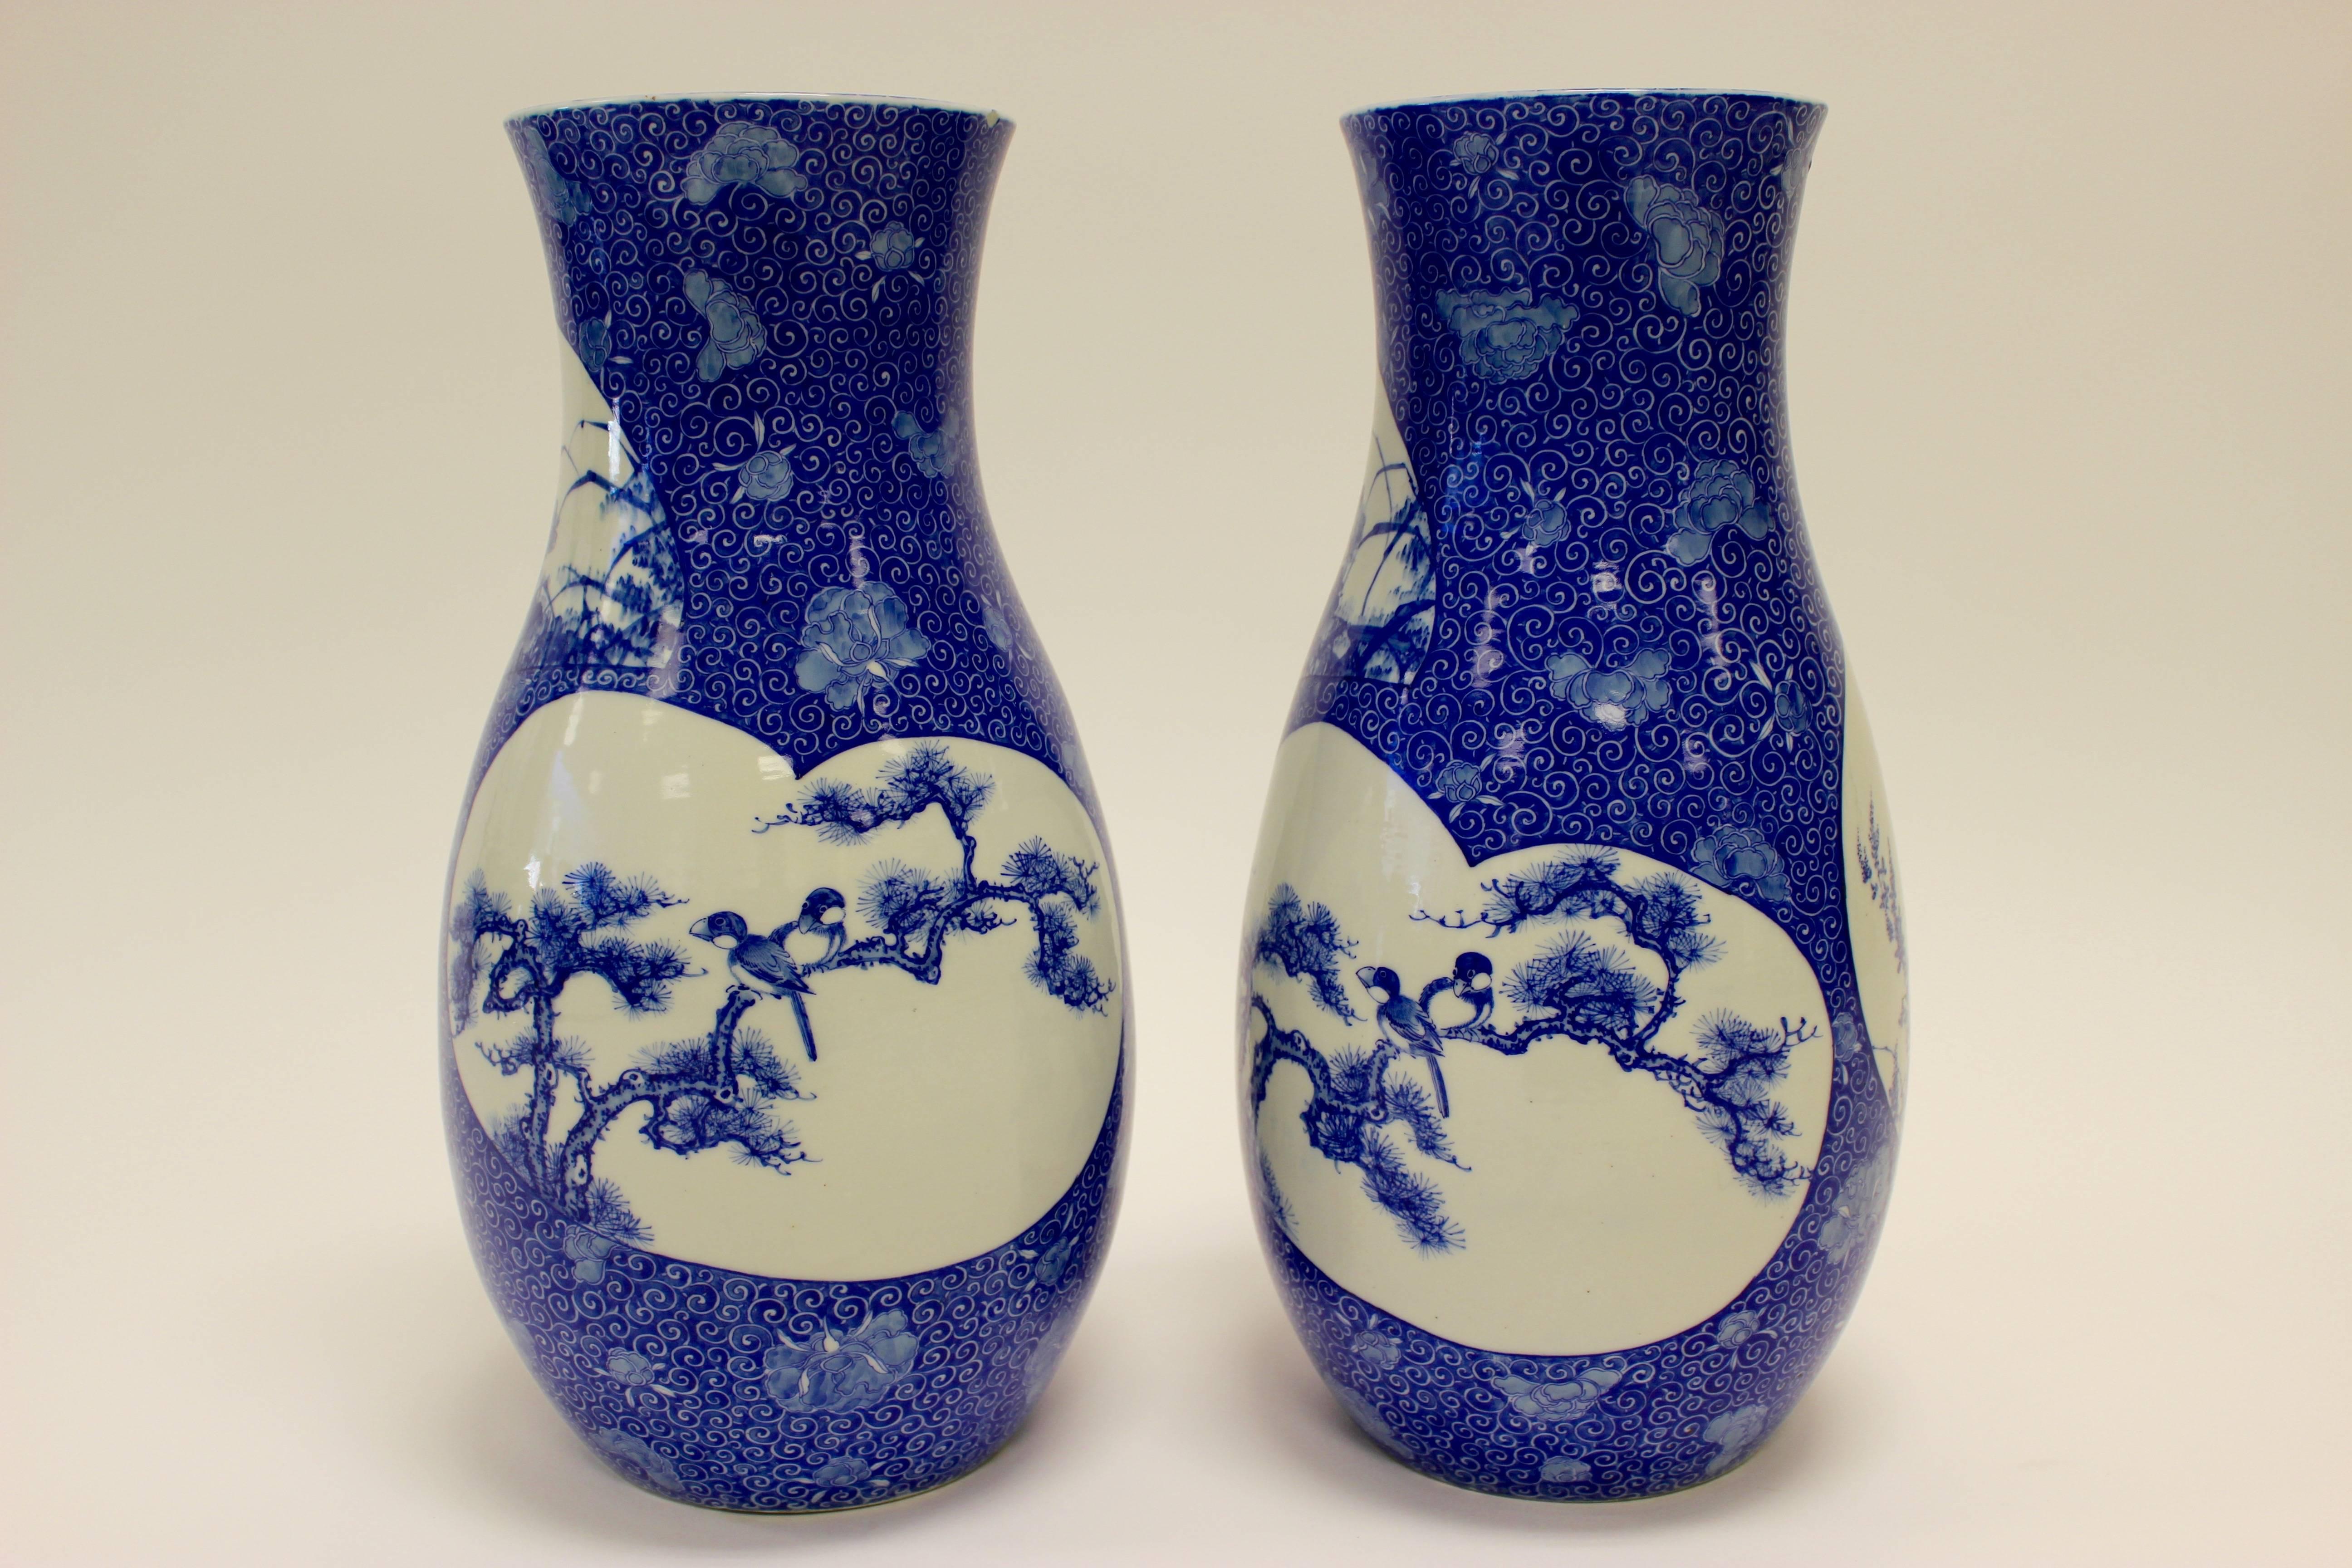 Paire de vases balustres en porcelaine japonaise bleu et blanc sous glaçure, datant de la fin du XIXe siècle, peints de panneaux en forme de fleurs, d'insectes et d'oiseaux. Autrefois dans la collection Kentshire, chaque pièce présente un panneau